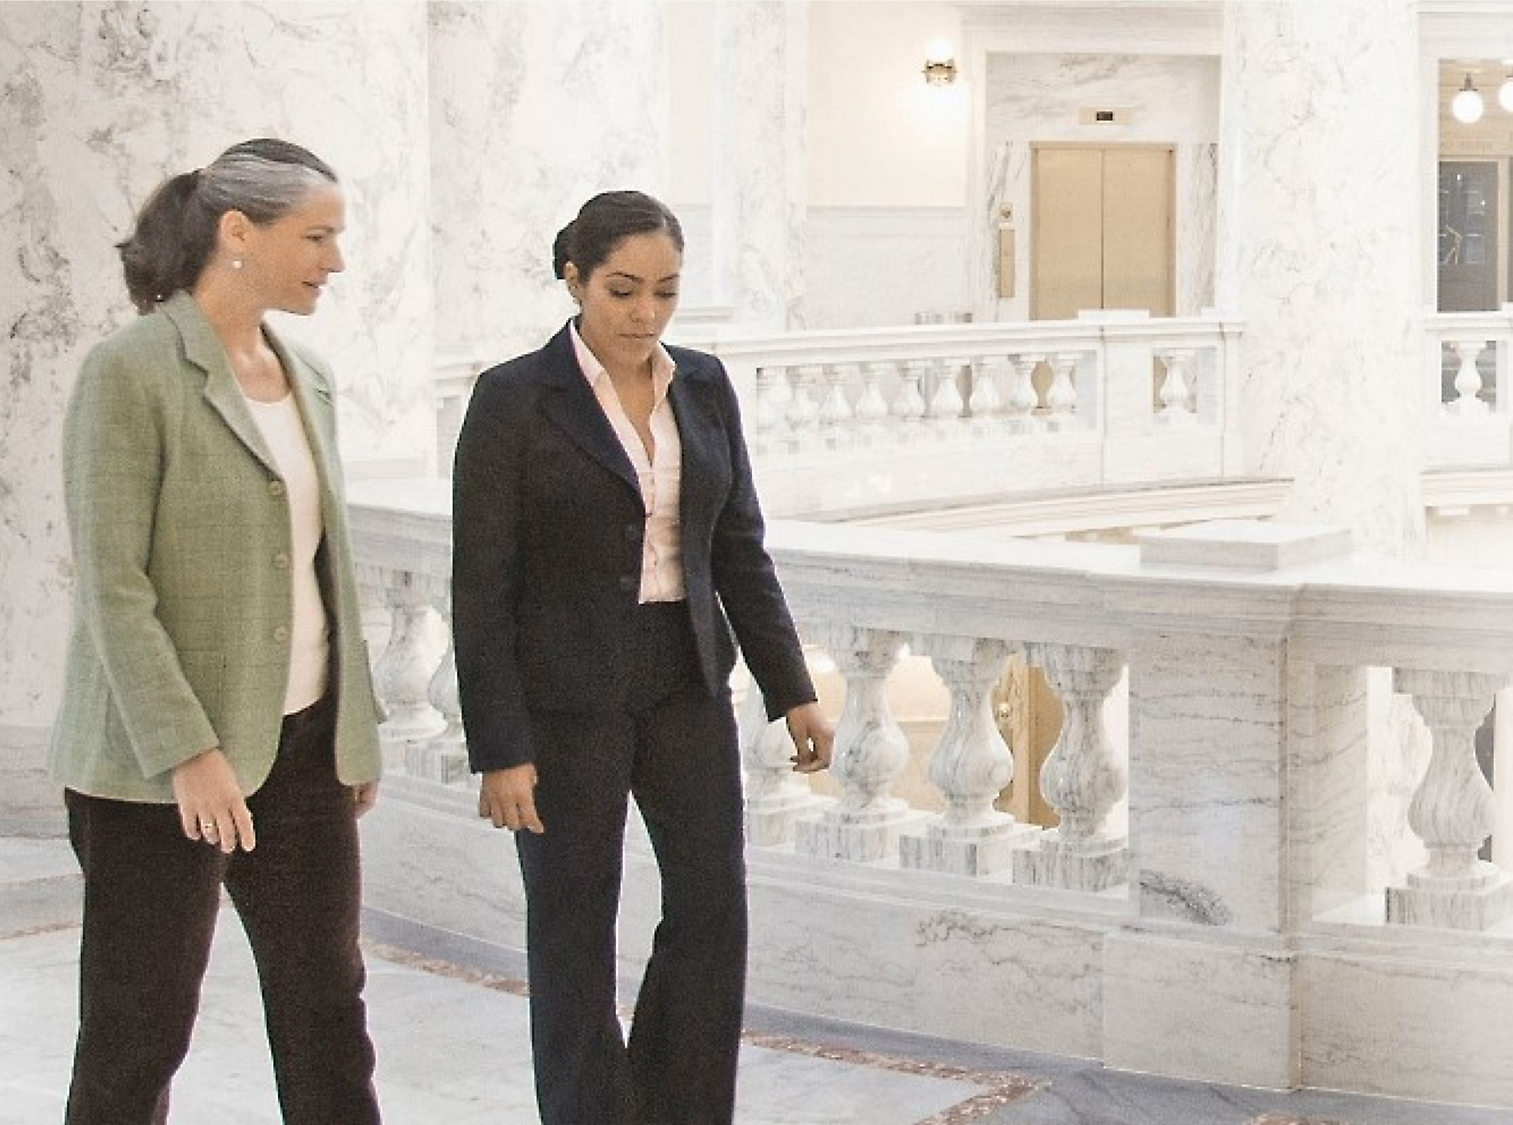 Zwei Frauen, die gehen und sich unterhalten, in einer mit Marmor ausgeschmückten Halle mit kunstvollen Balustraden im Hintergrund.